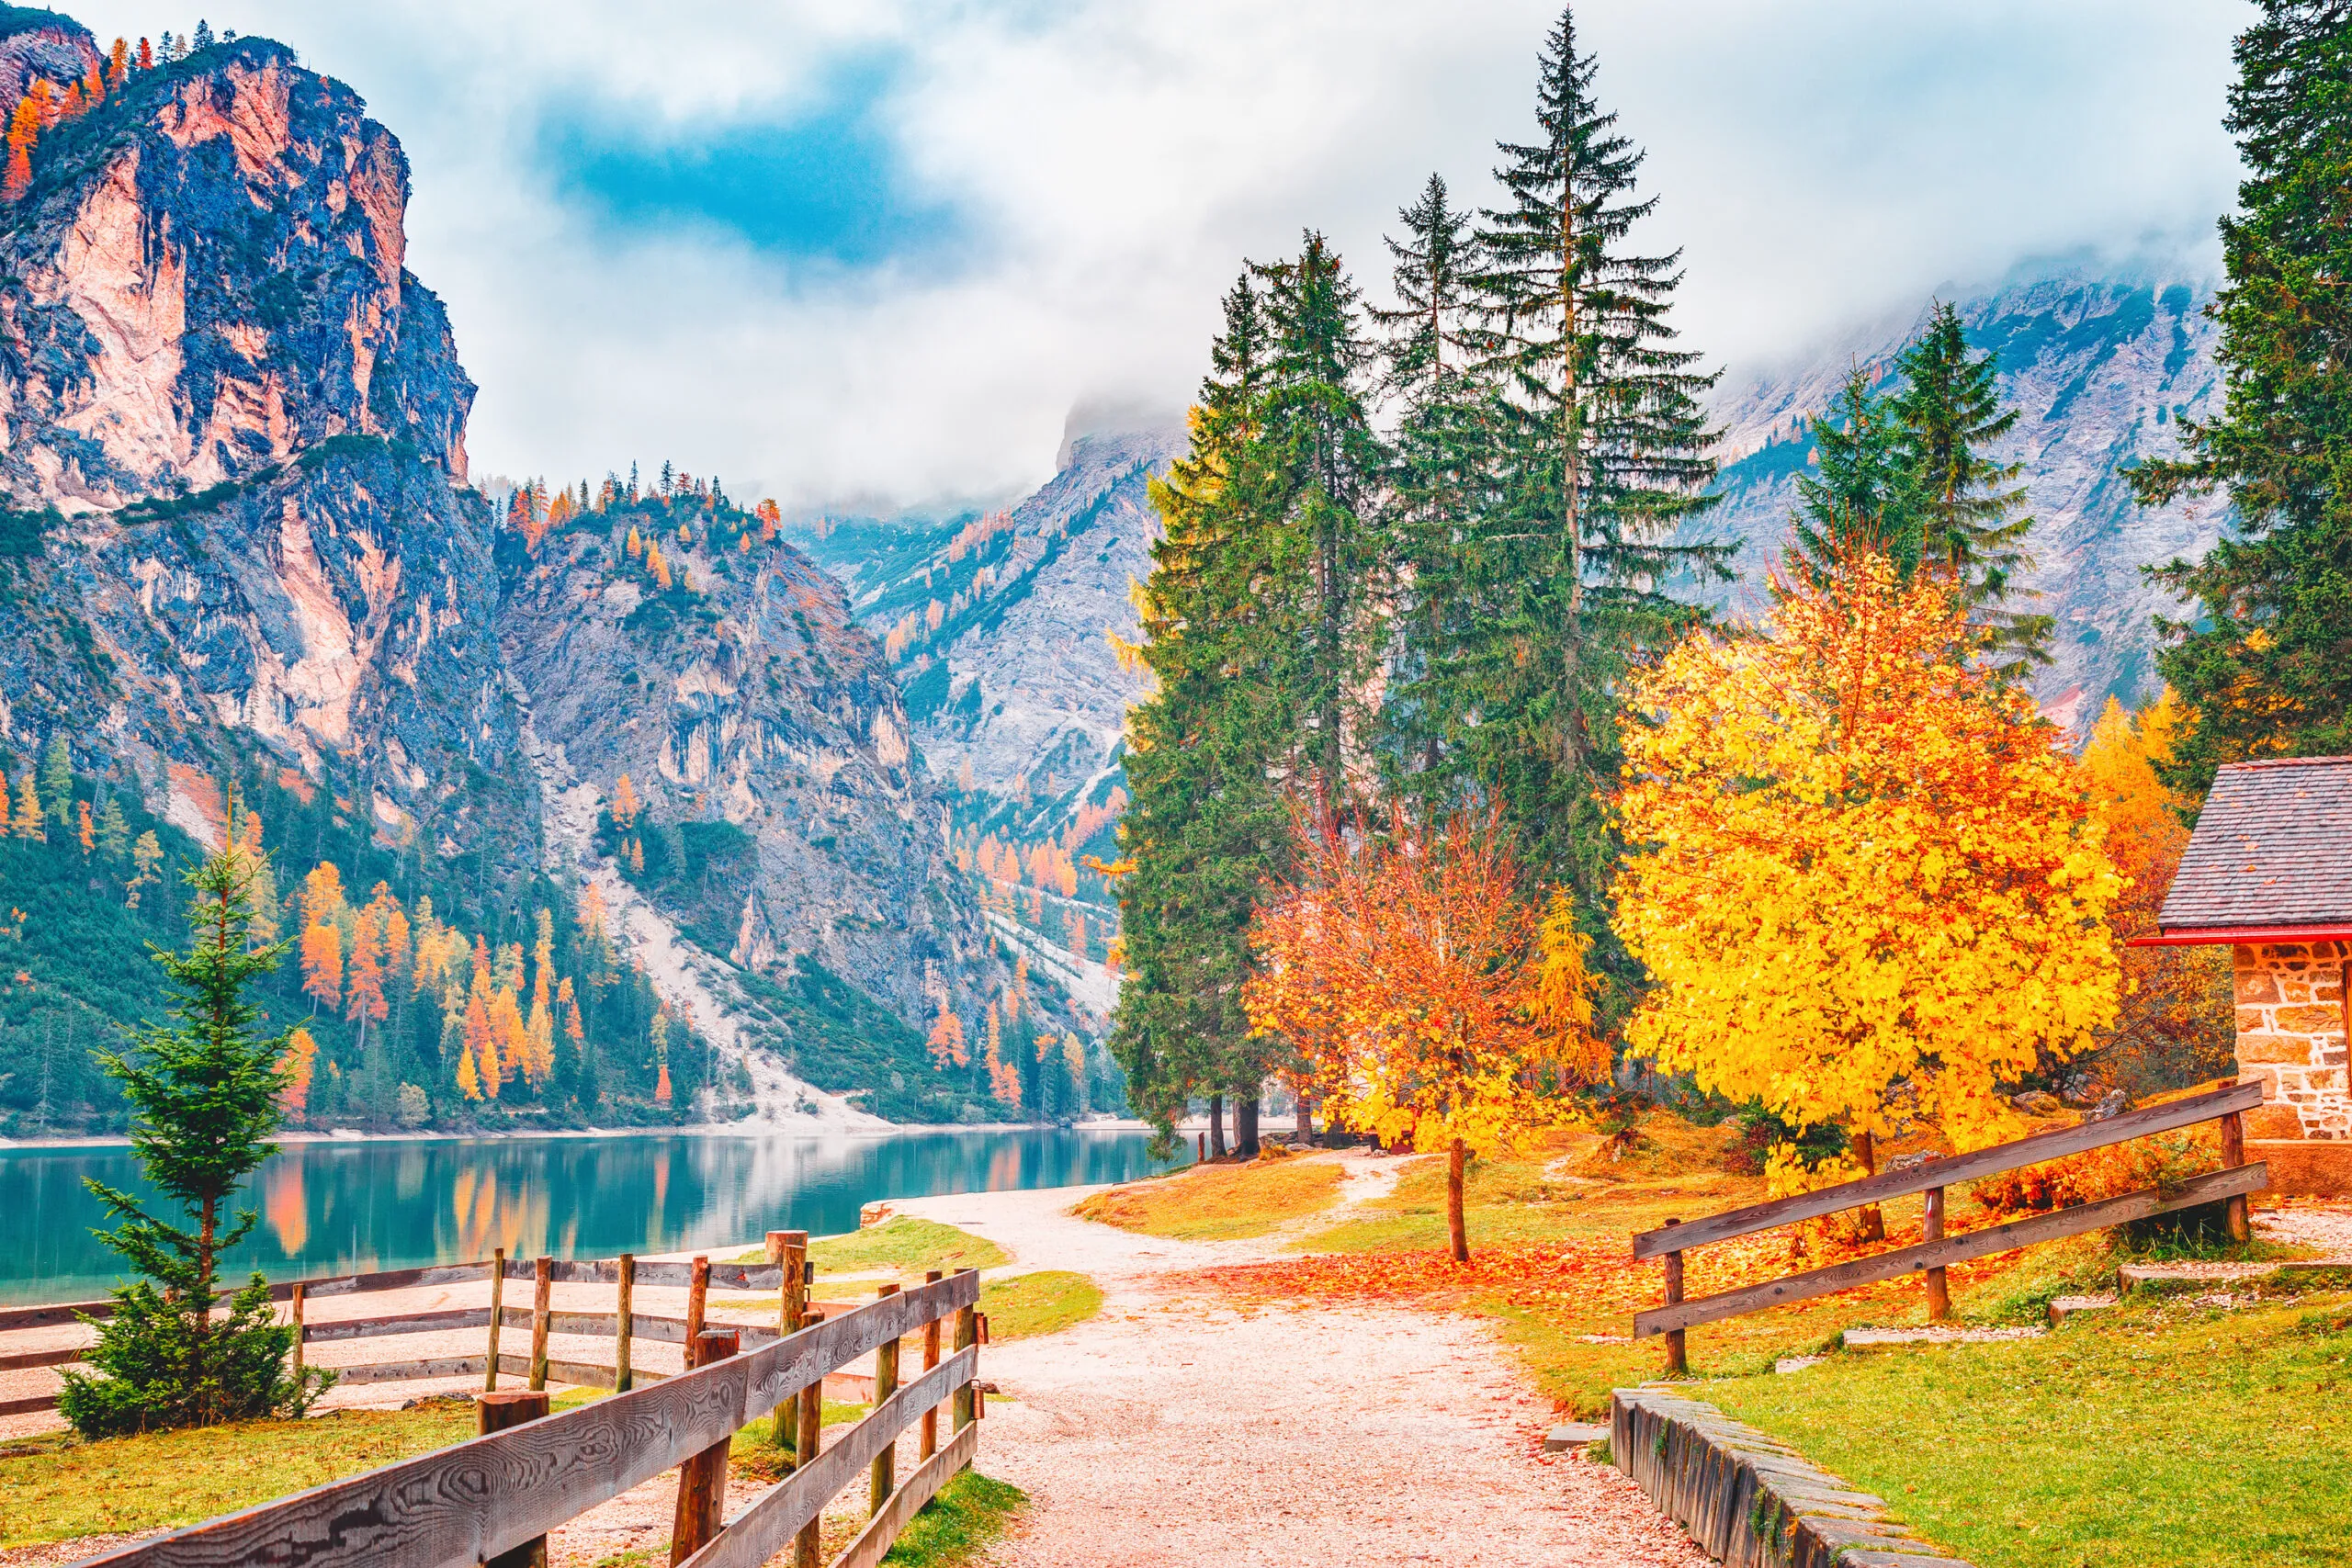 Herbstlandschaft des Pragser Wildsees - Pragser Wildsee vor dem Hintergrund der Alpen in Südtirol in Italien. Europäische berühmte und sehr beliebtes Reiseziel. Herbstlandschaft mit gelben Blättern Bäume am Ufer des Sees.